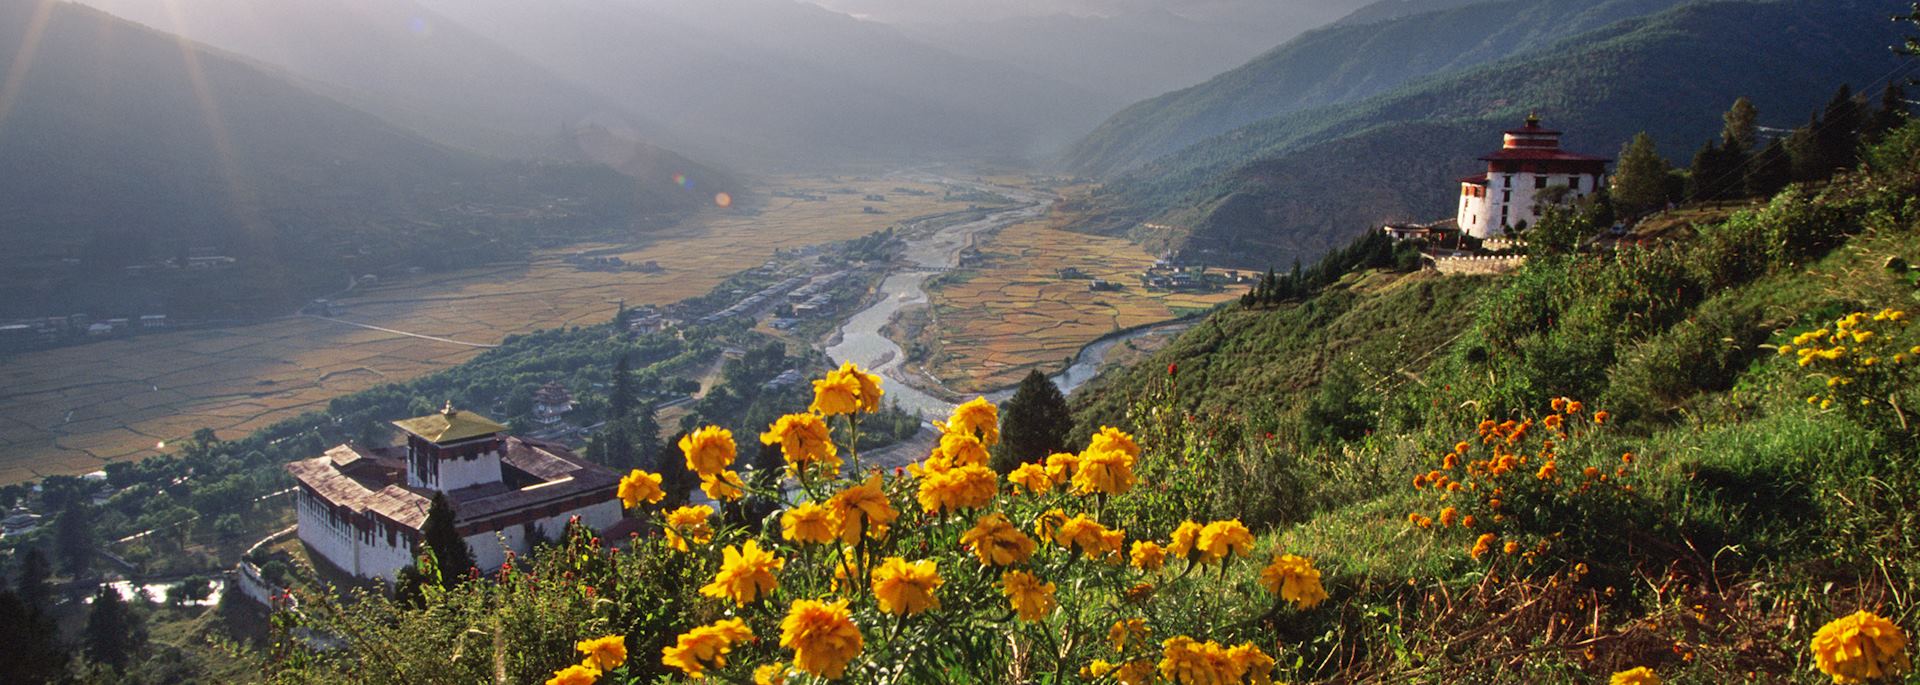 Mountain scenery in Bhutan